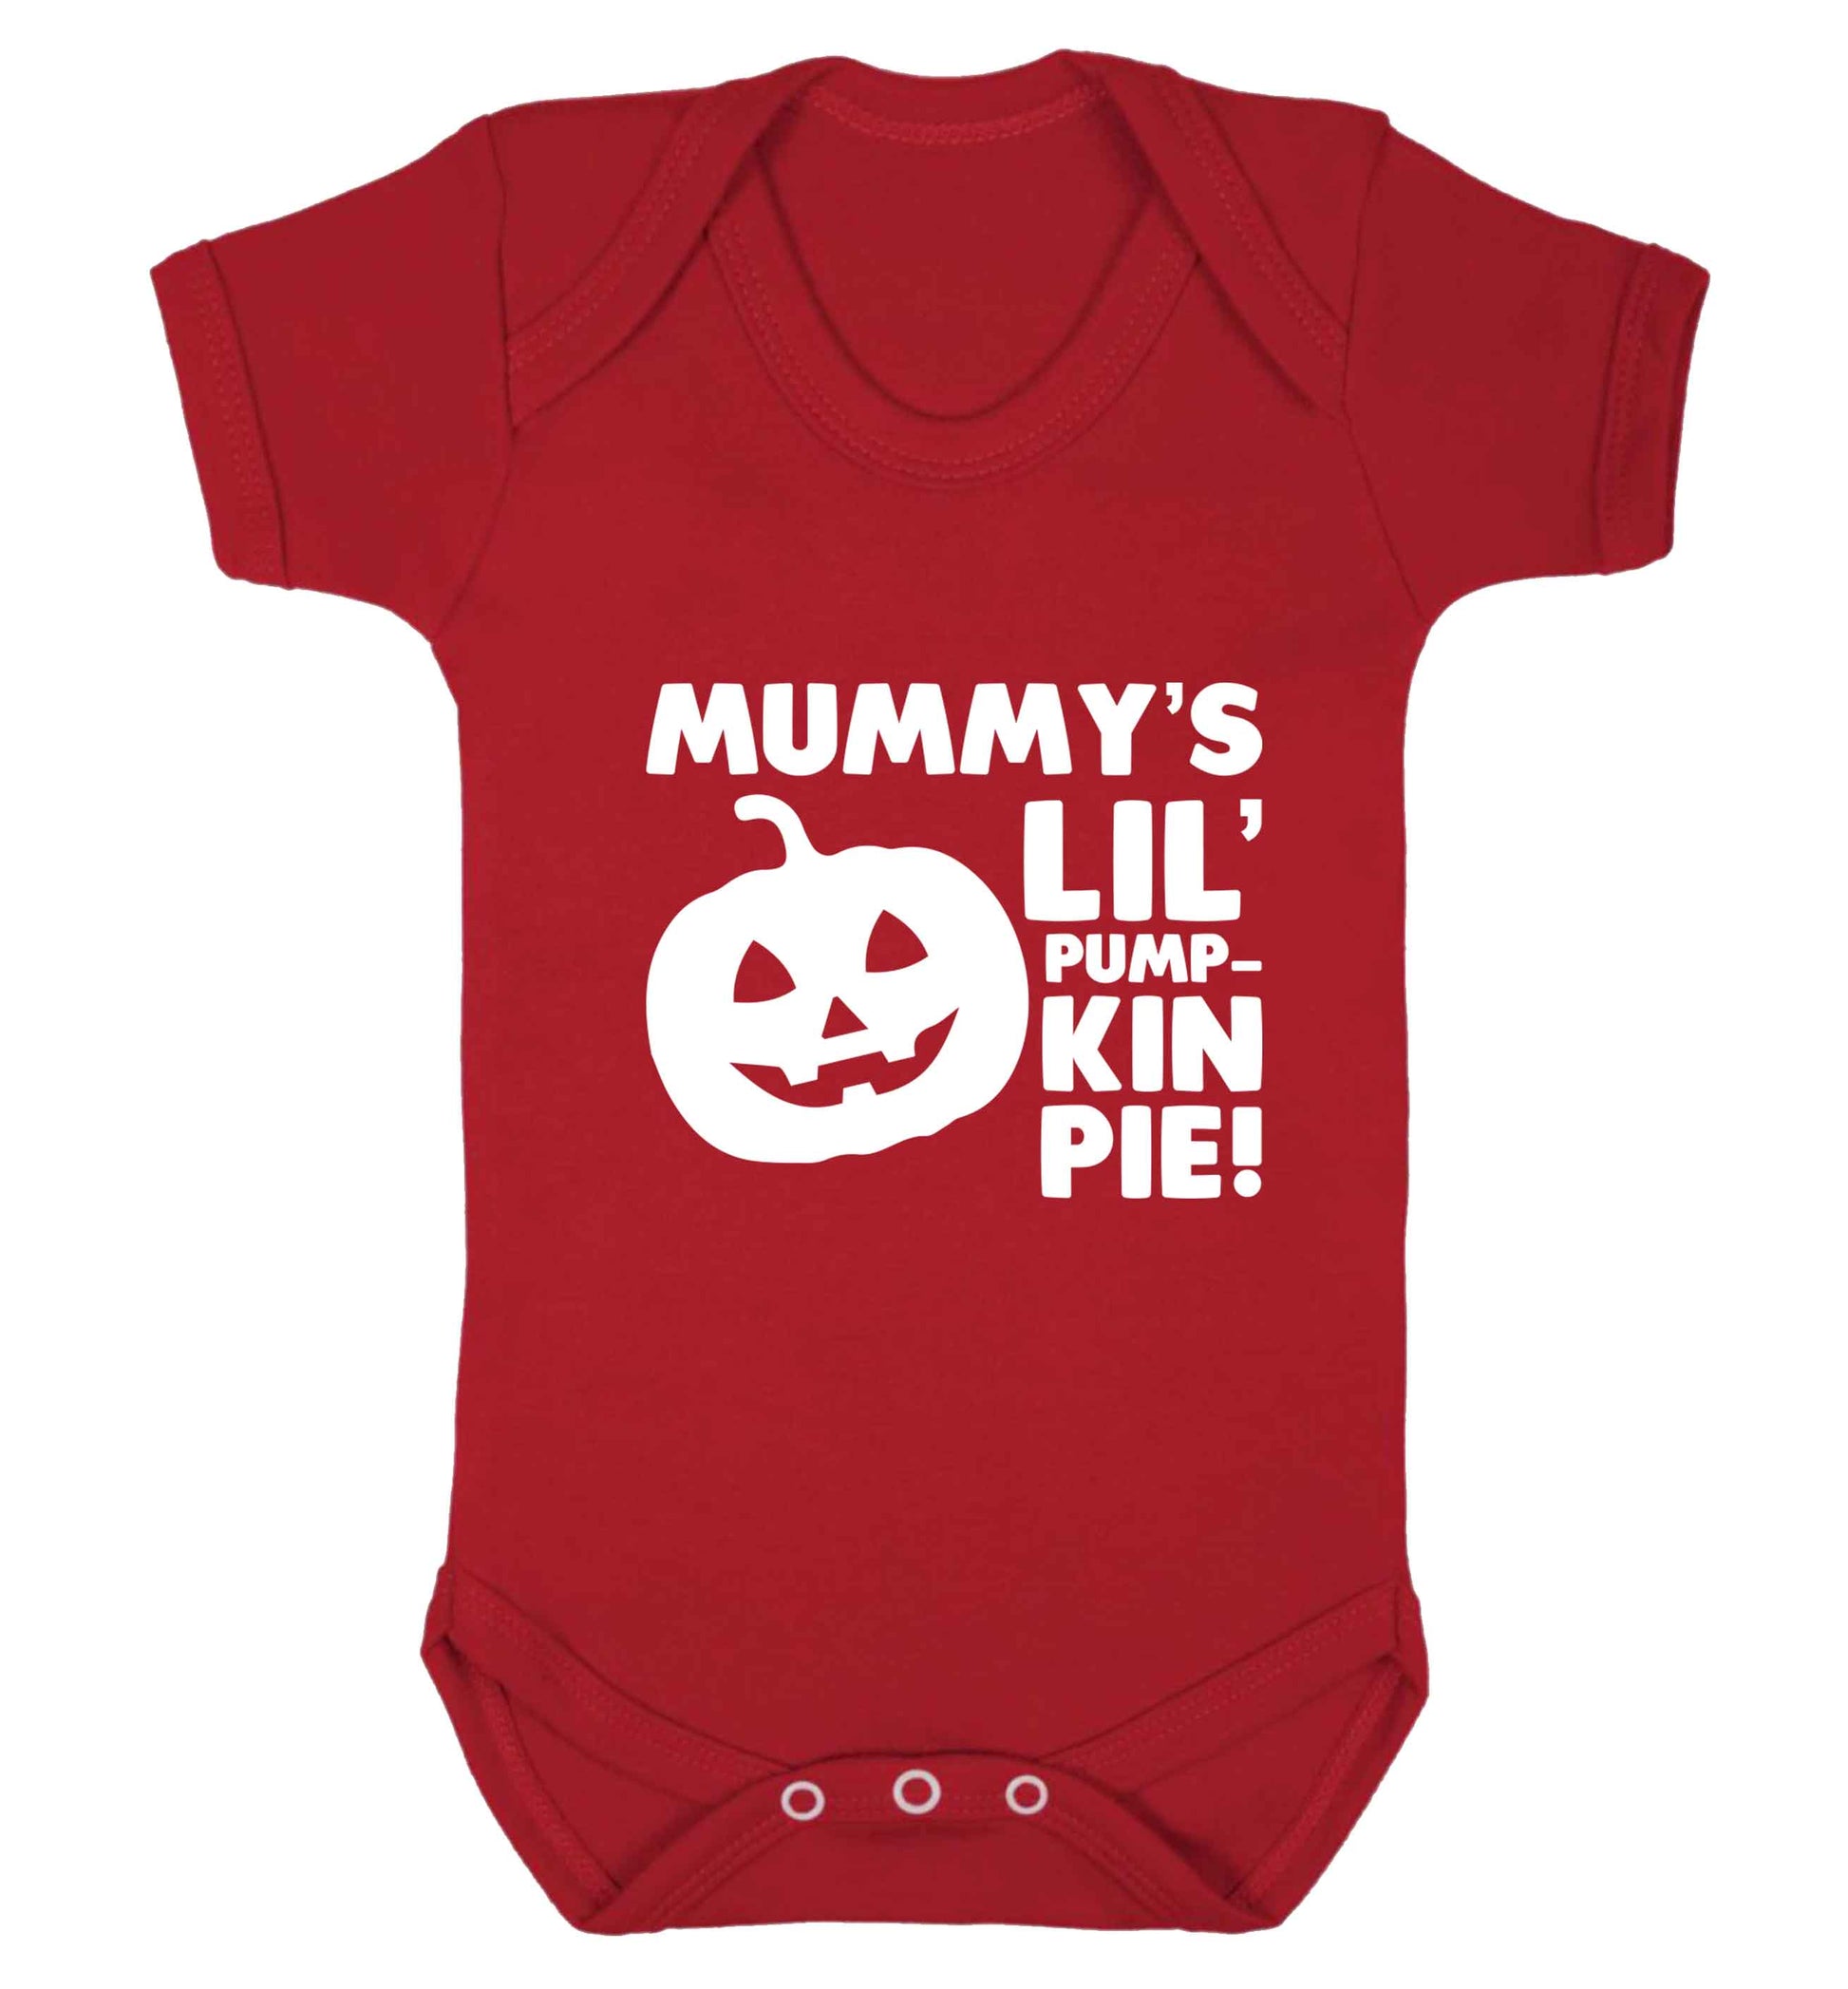 Mummy's lil' pumpkin pie baby vest red 18-24 months